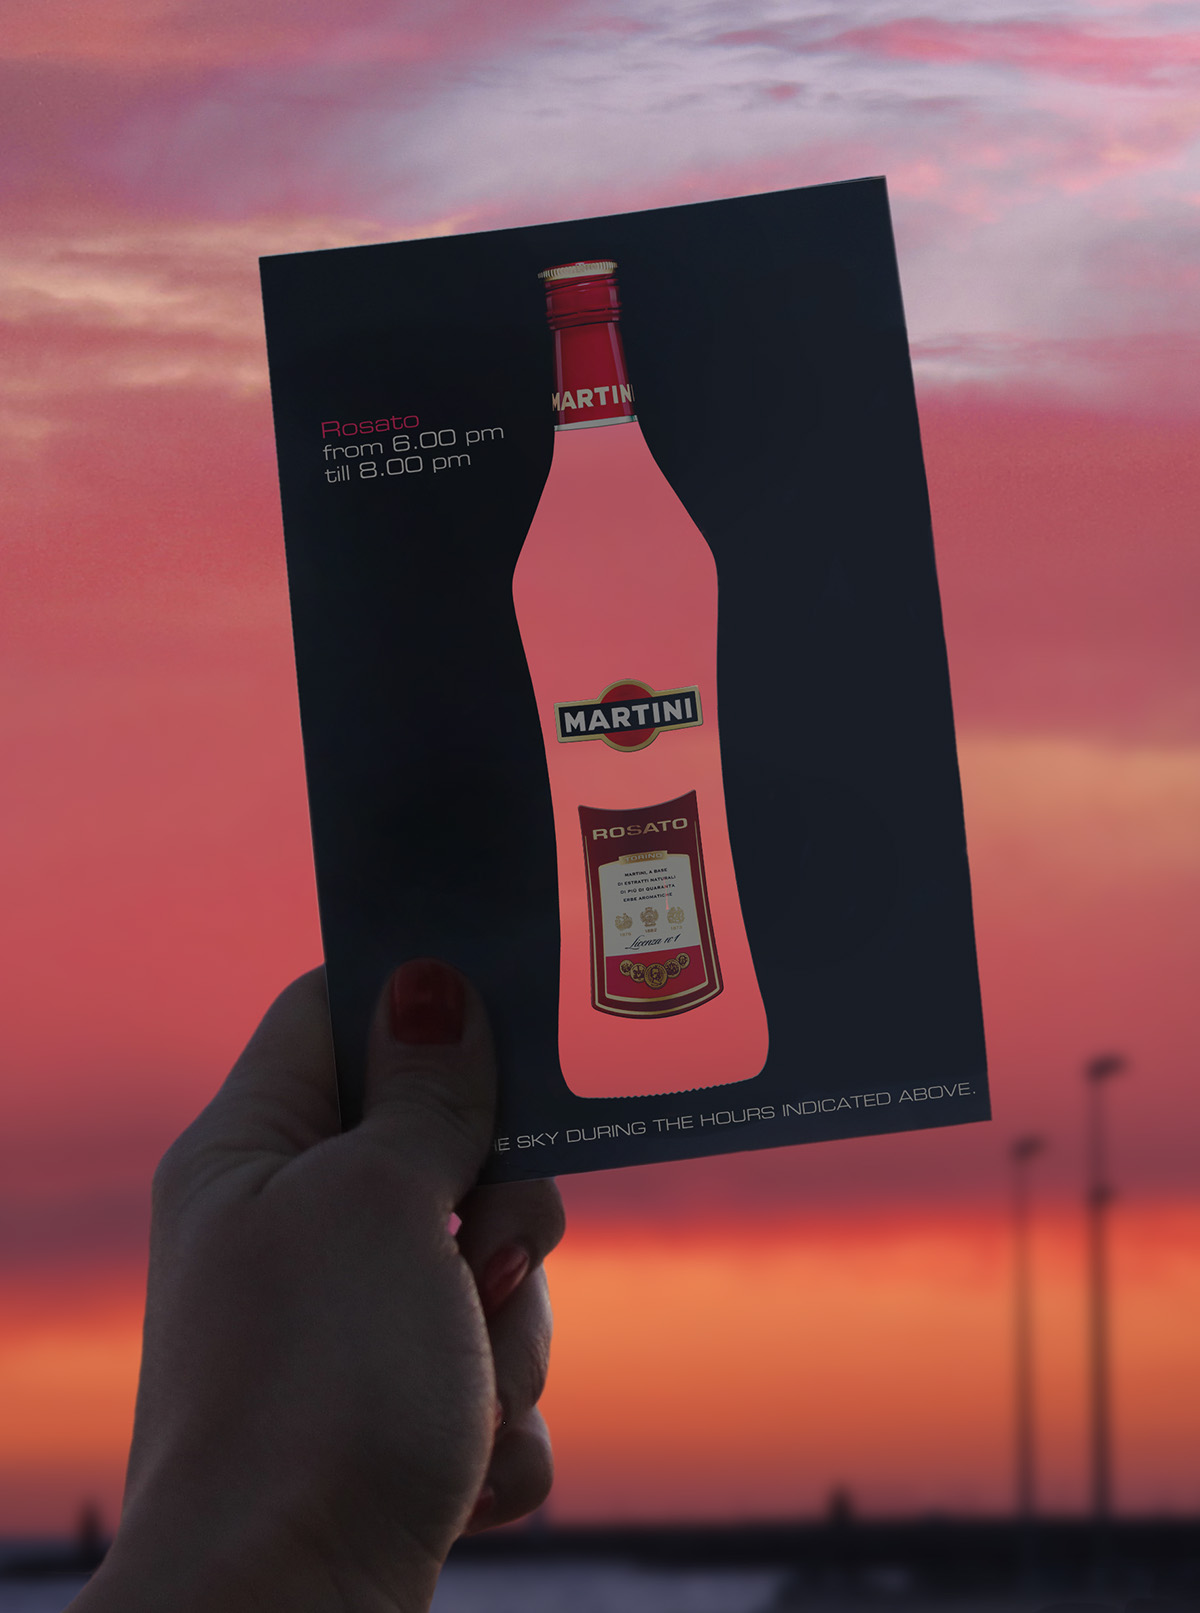 promo promocard Cartolina Martini rosato interactive Ambient bottle Barbara ghiotti